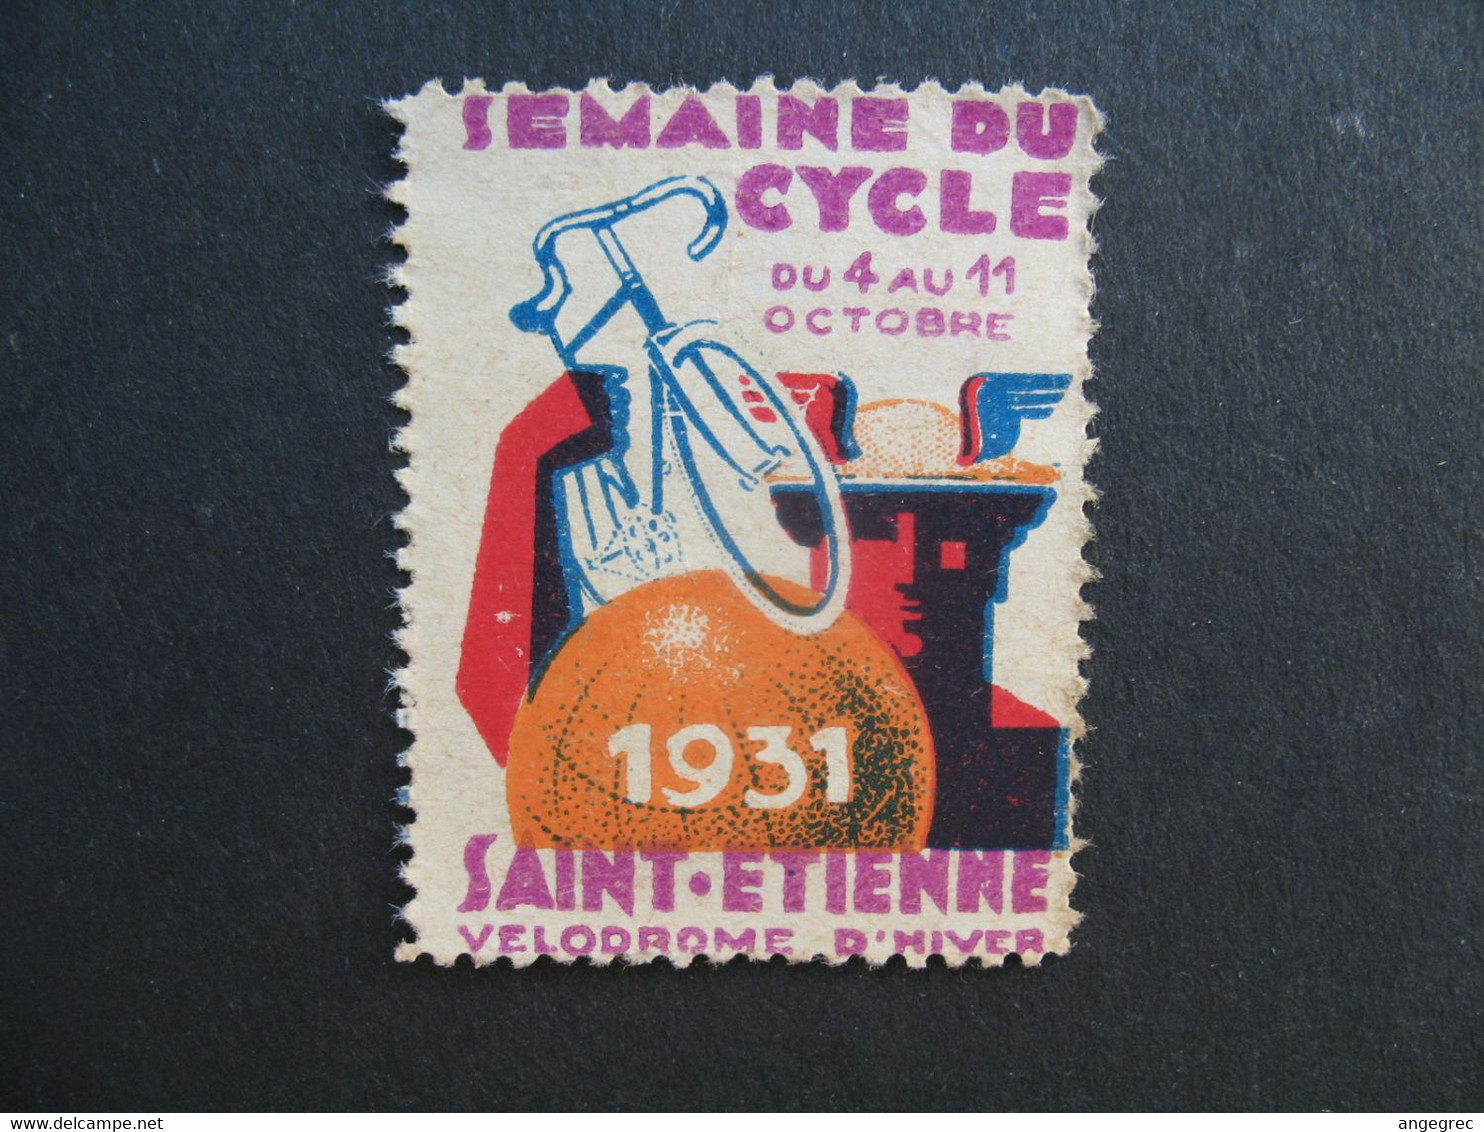 Vignette  1931 Semaine Du Cycle Saint-Etienne Vélodrome D'hiver - Deportes